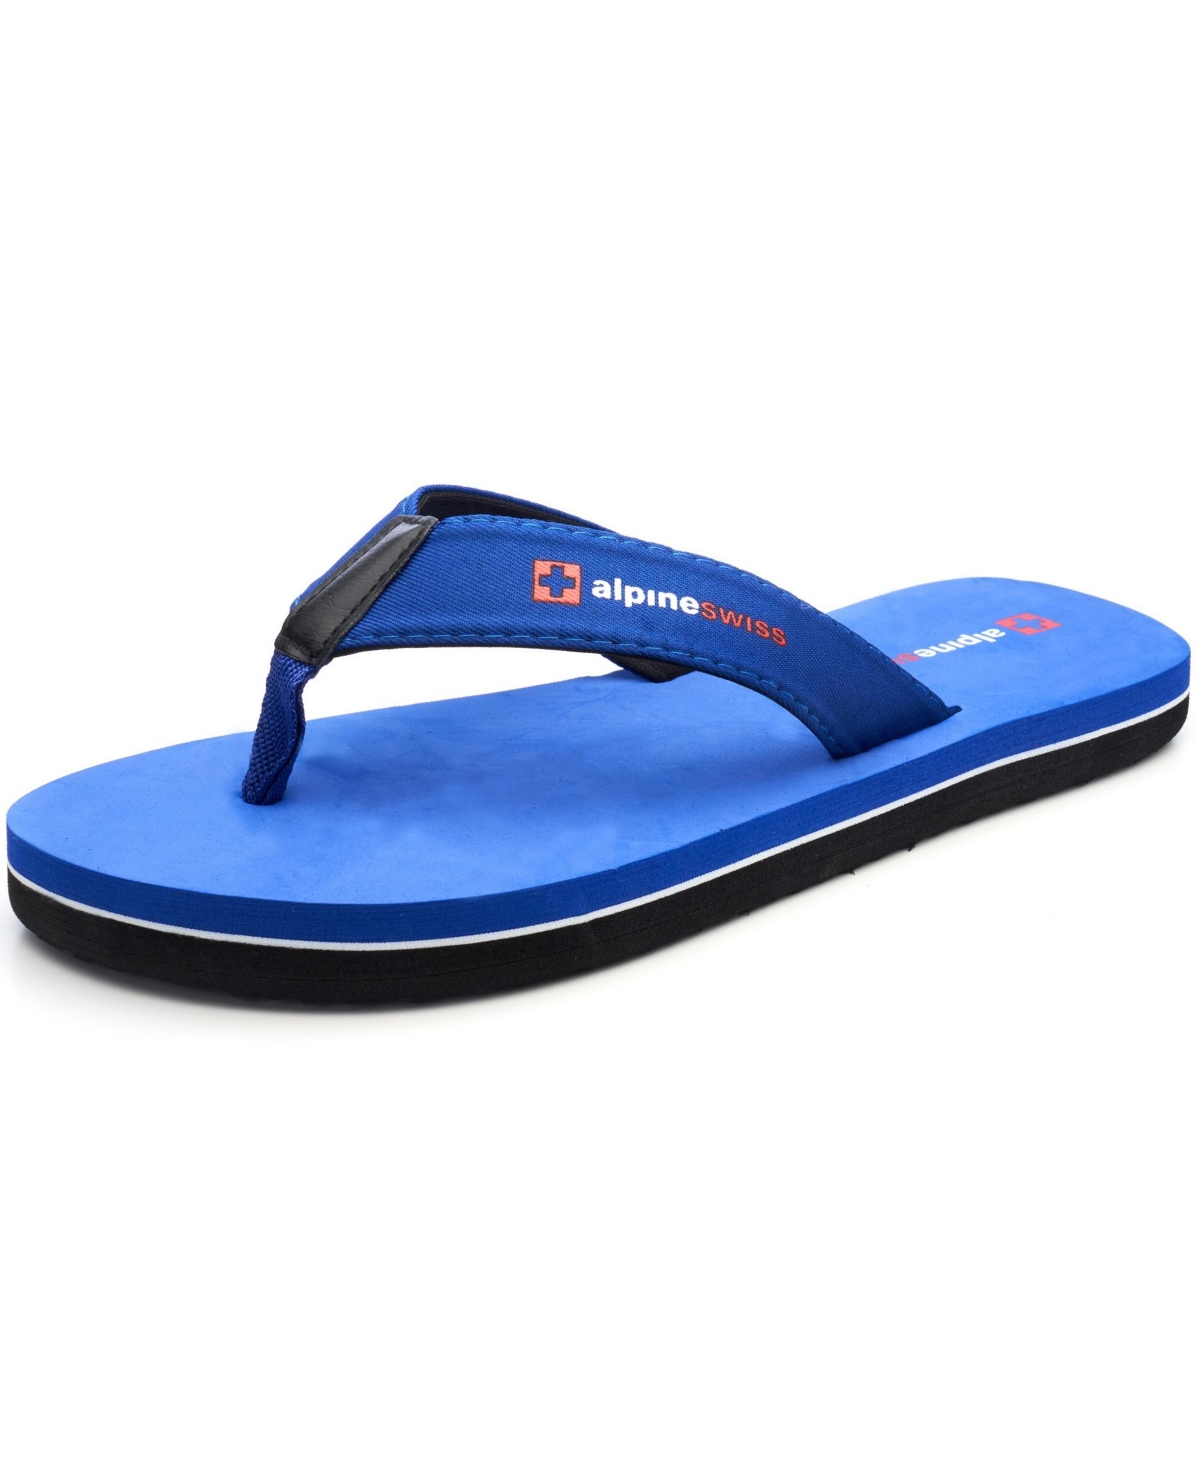 Men's Flip Flops Beach Sandals Eva Sole Lightweight Comfort Thongs - Royal blue